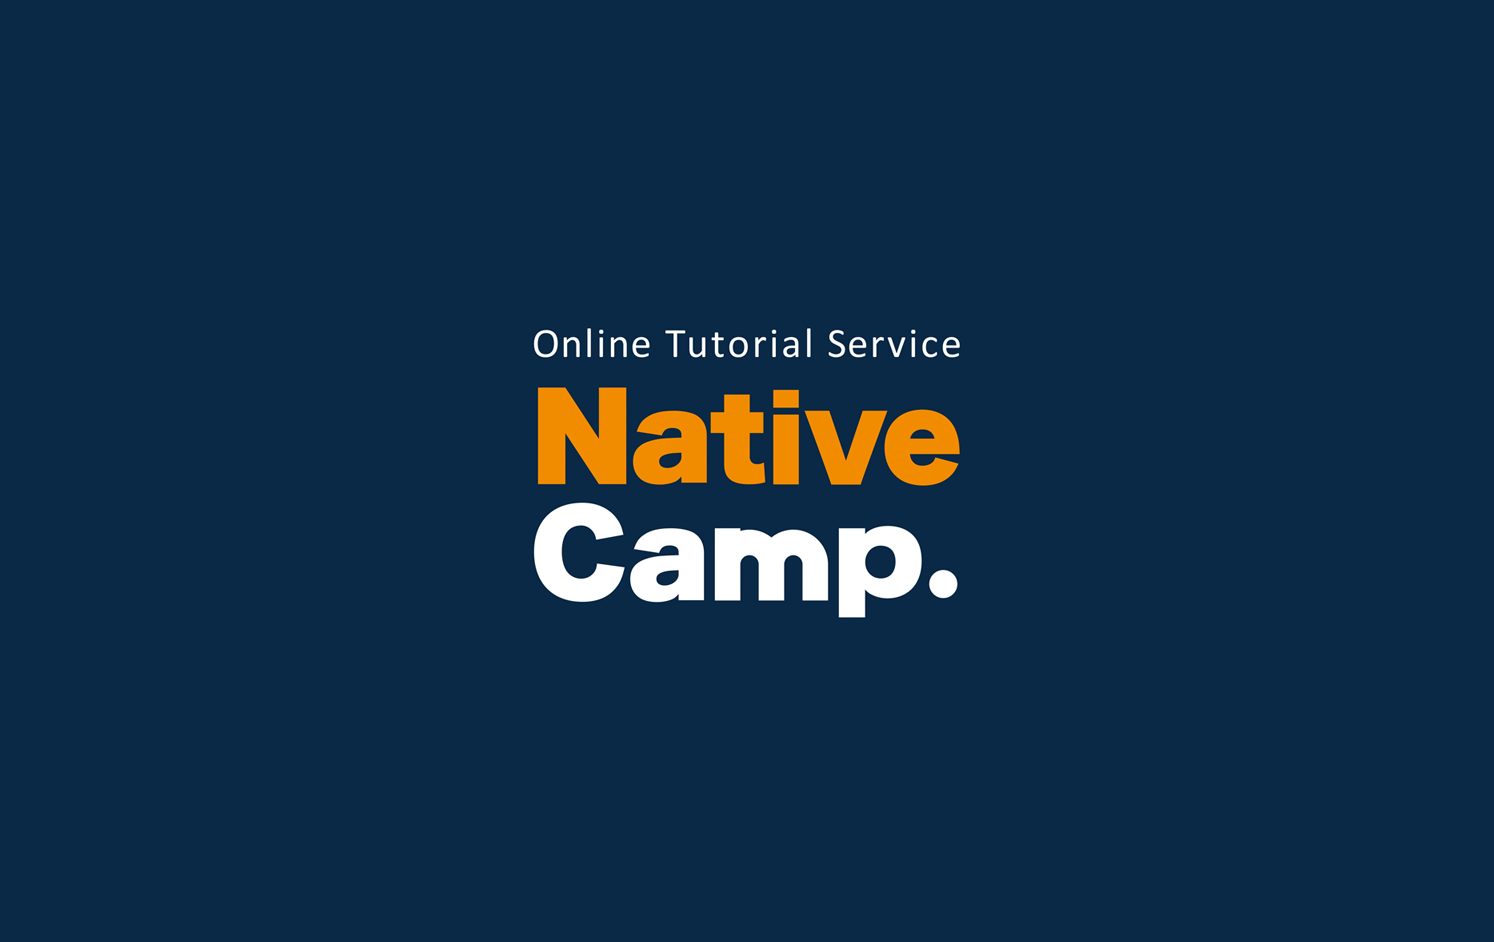 NativeCamp